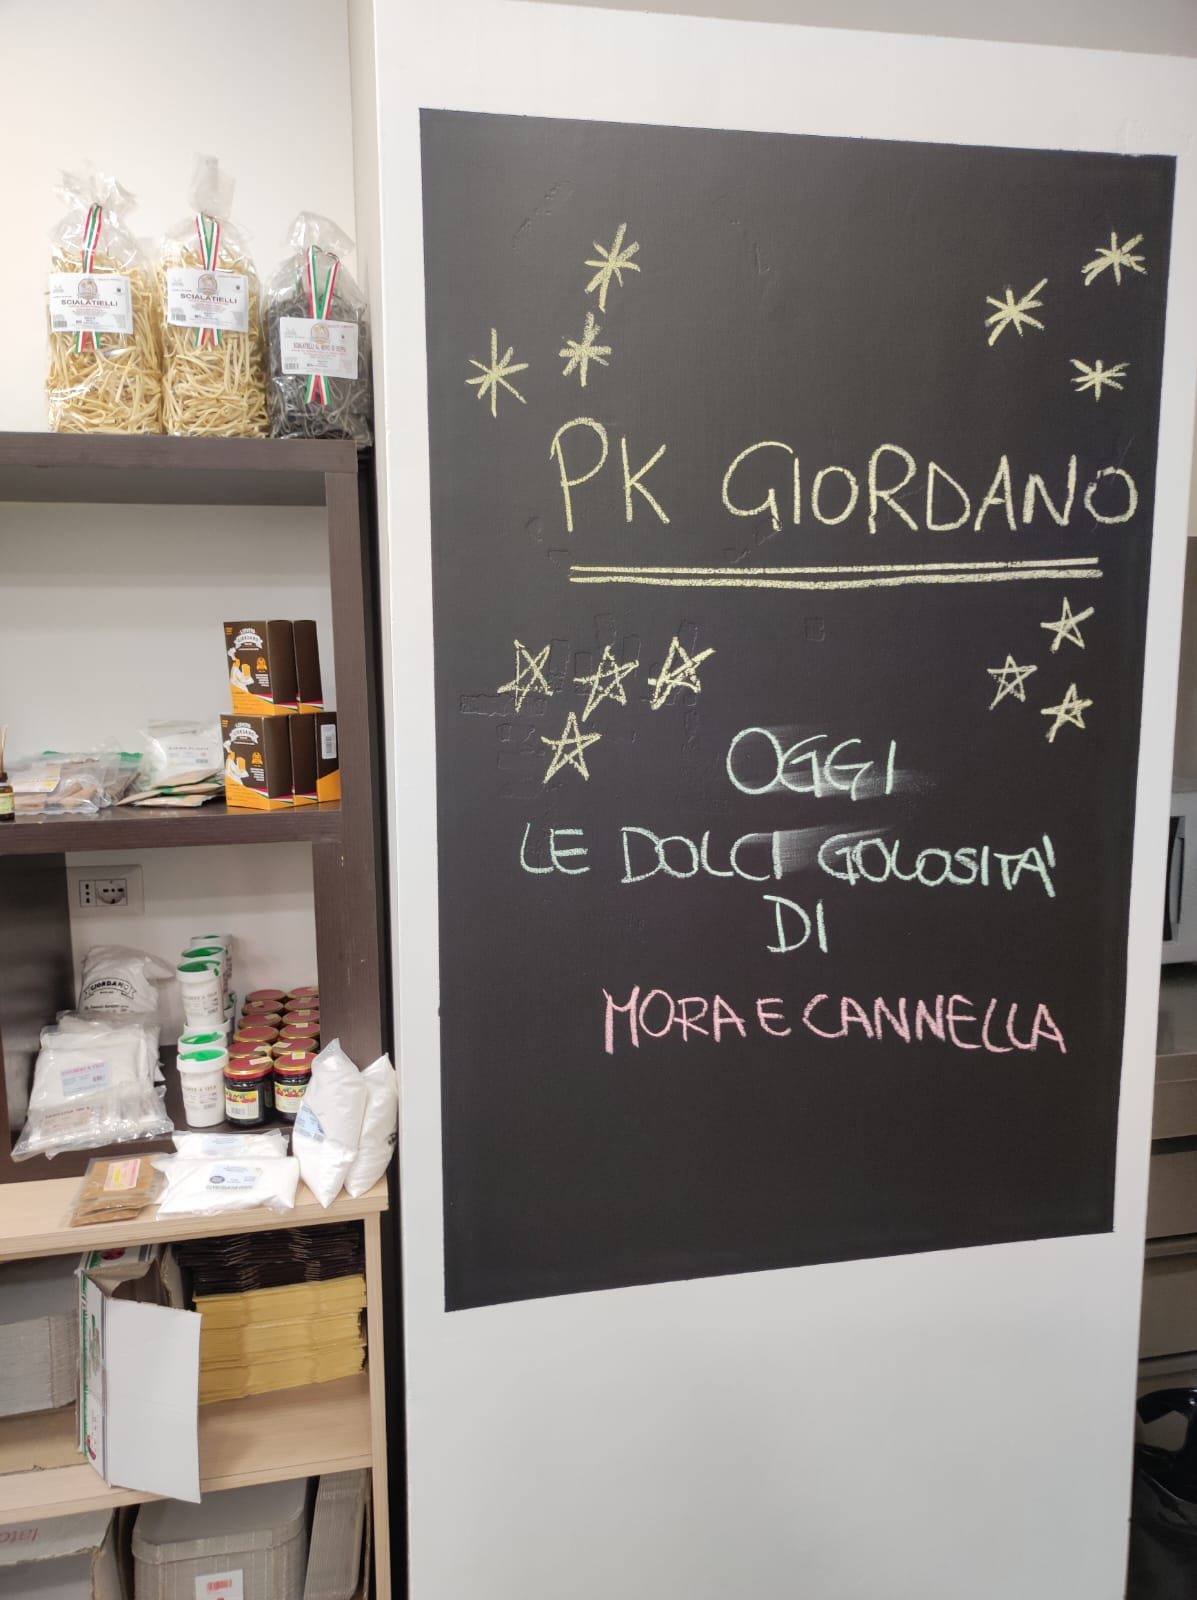 Presentato al Pastificio Pk Giordano il progetto "Mora e Cannella" dell'Associazione "In Rosa"